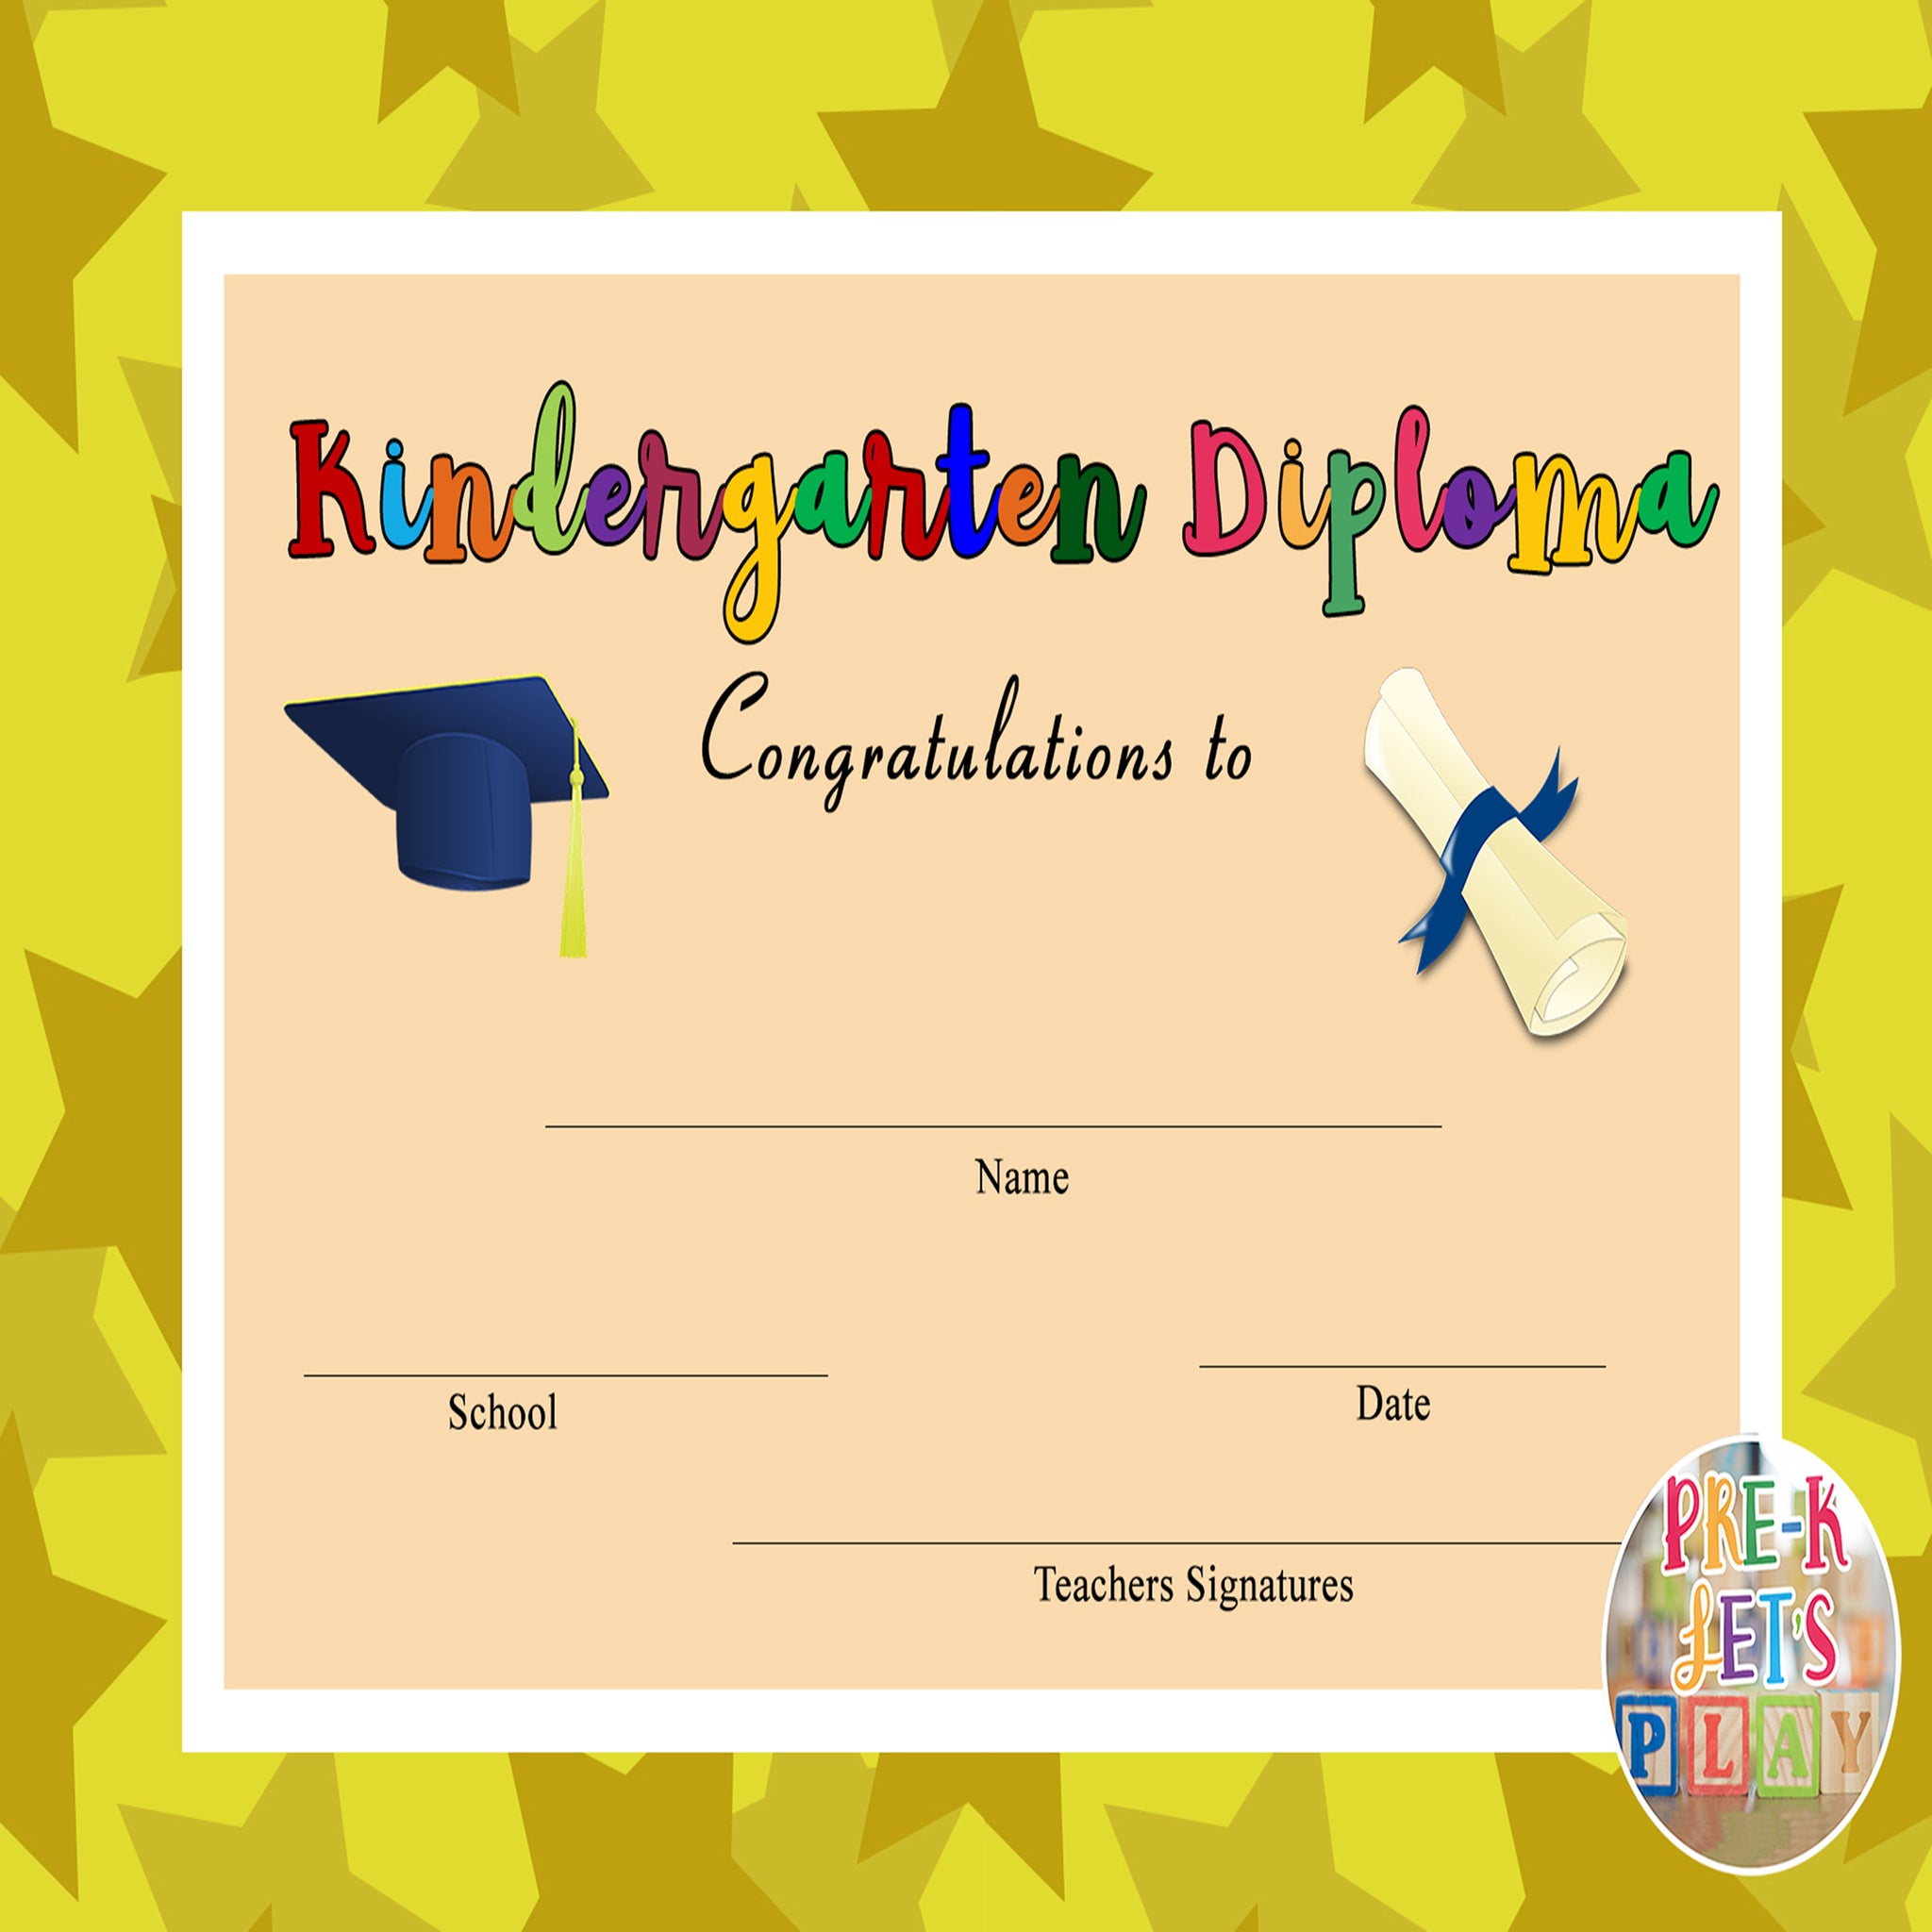 kindergarten-graduation-editable-diplomas-certificates-end-of-the-y-pre-k-let-s-play